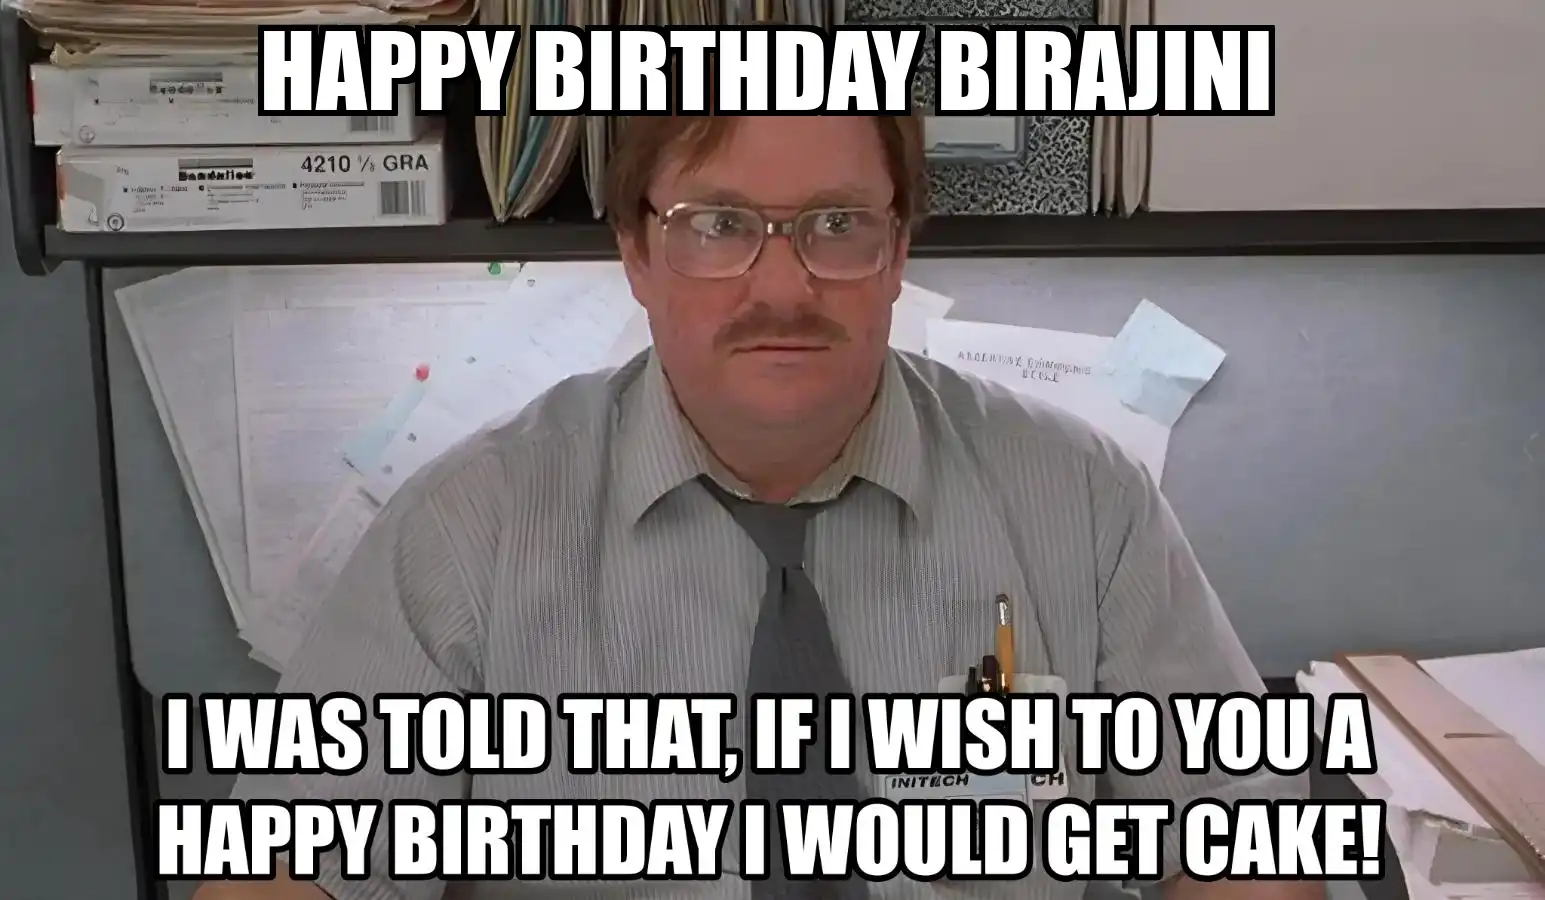 Happy Birthday Birajini I Would Get A Cake Meme